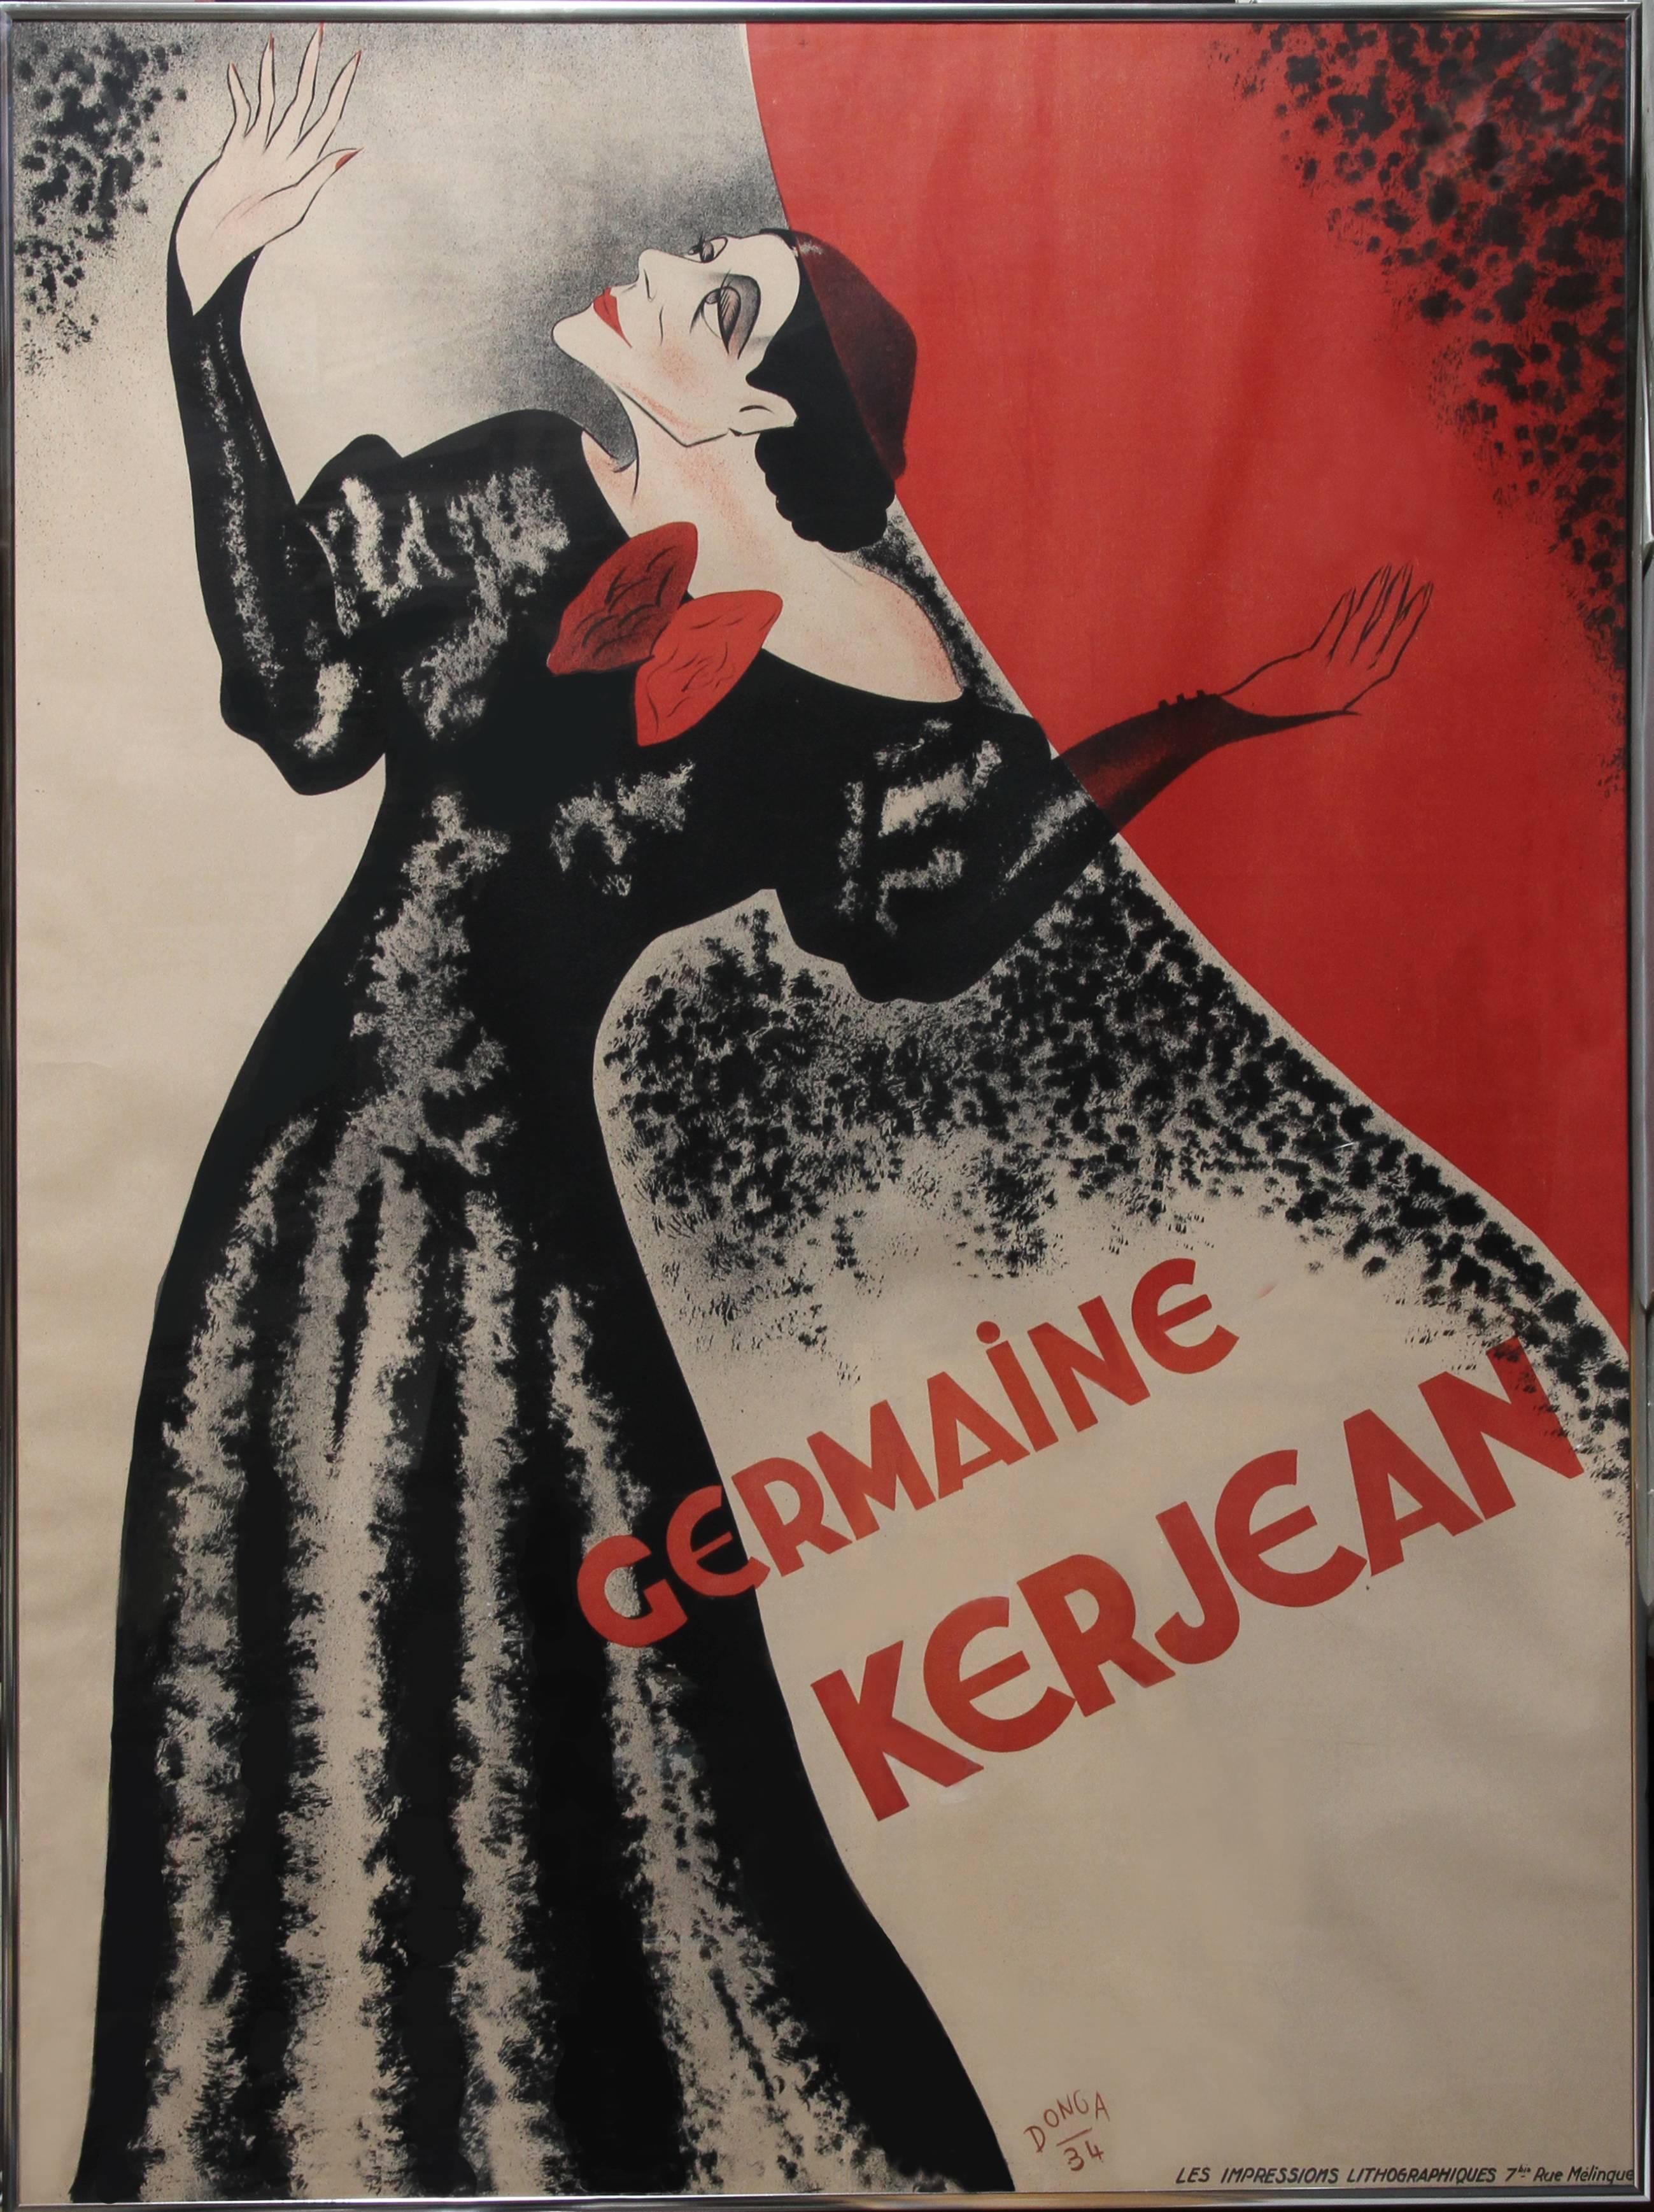 Donga Figurative Print - Germaine Kerjean, Lithograph Poster 1934